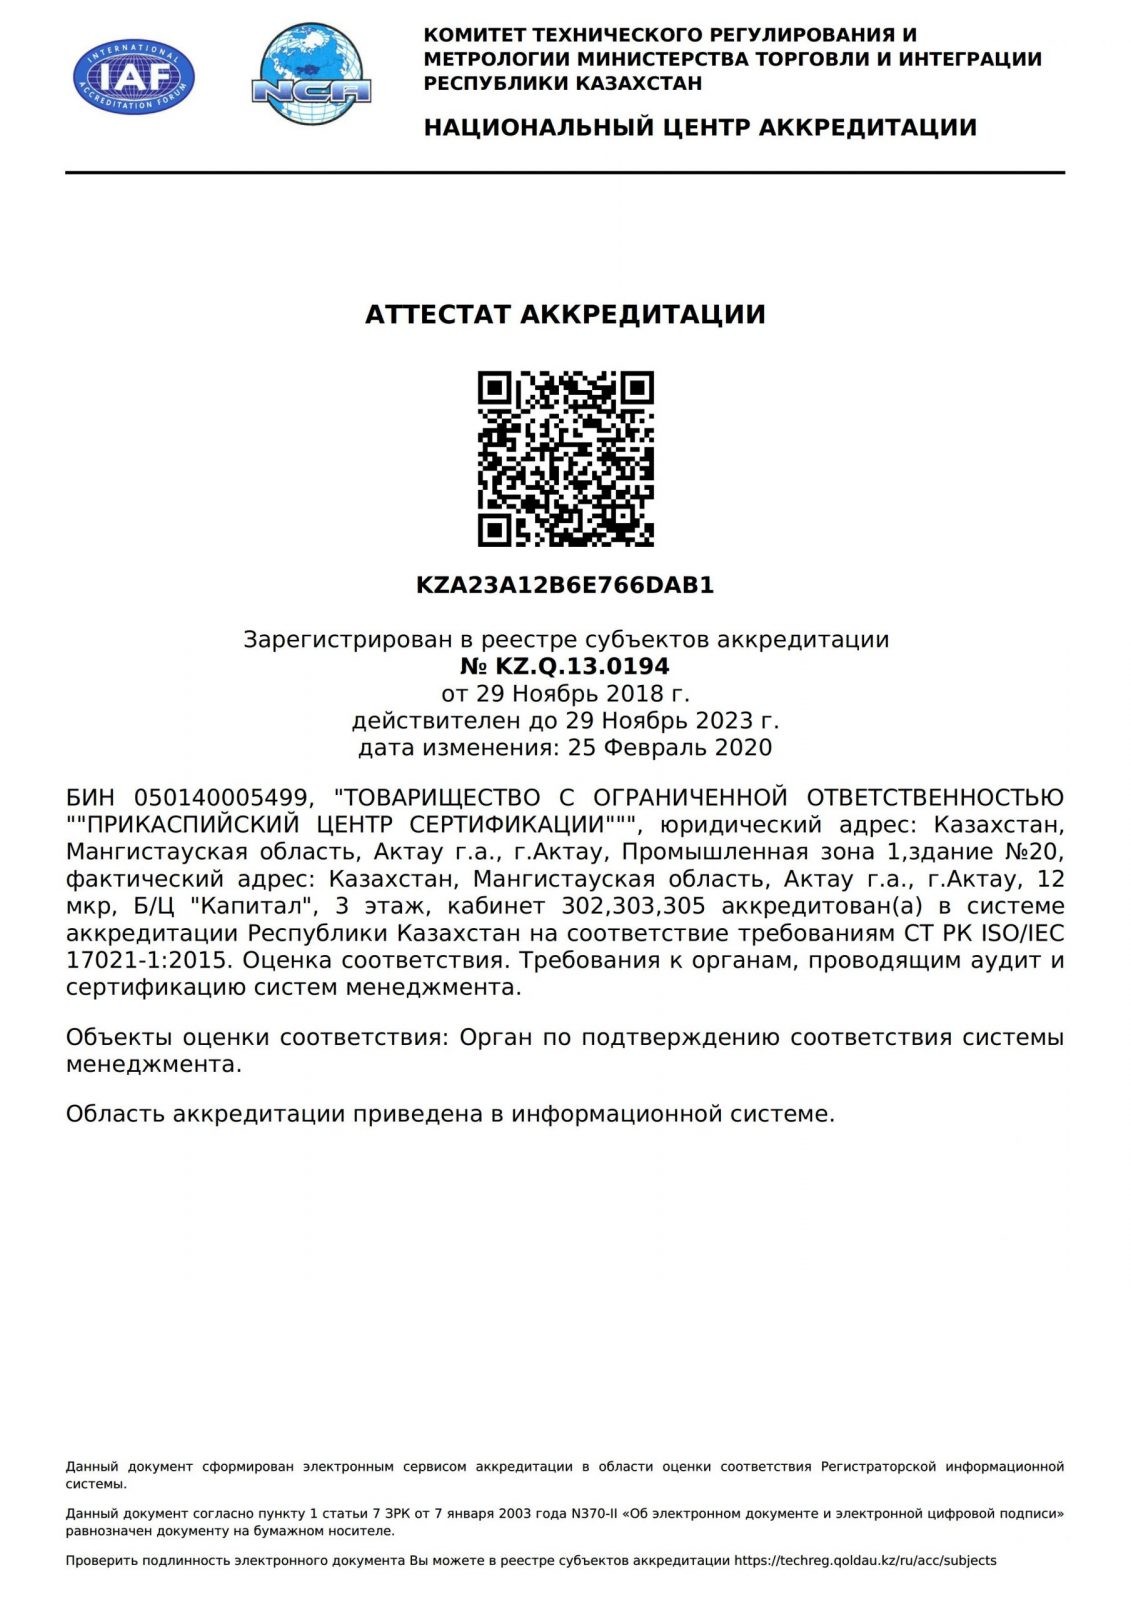 accreditation_certificate_ru_4254 (2)